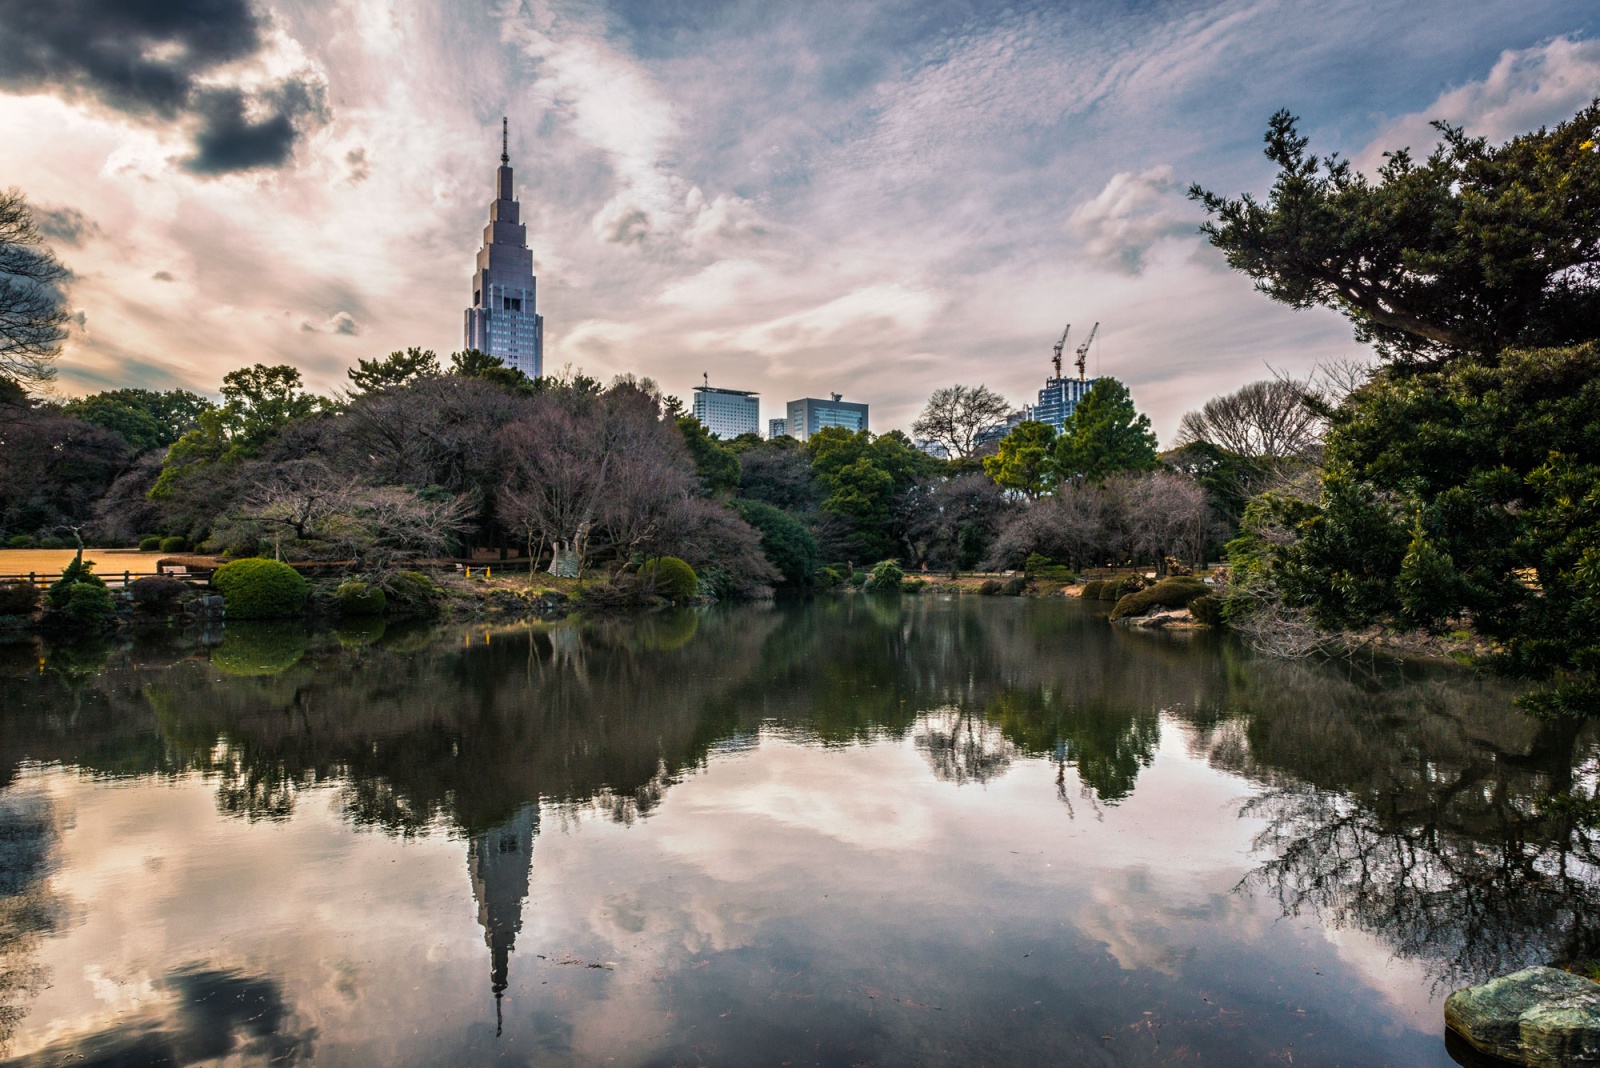 Japan, Tokyo "Parco Nazionale di Shinjuku Gyoen"

©Donato Palumbo